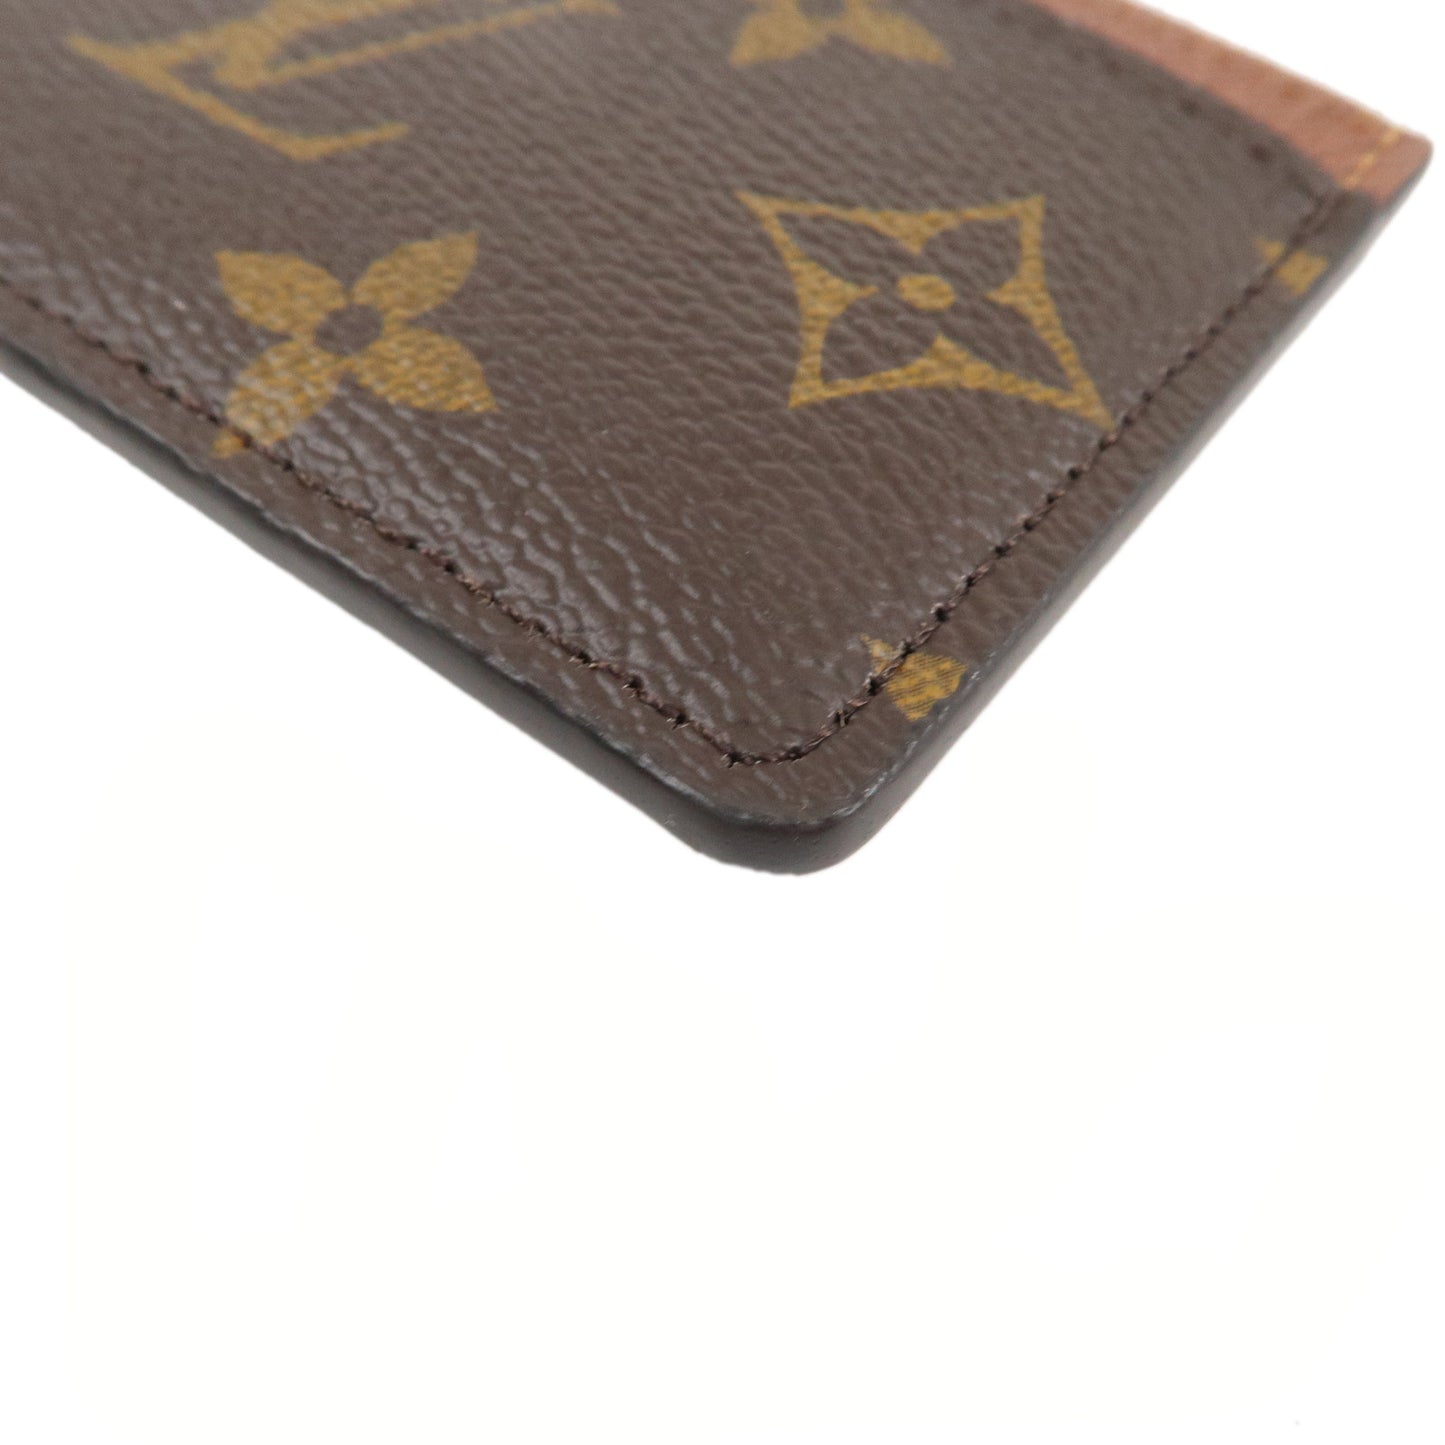 Louis Vuitton Monogram Porte Cartes Simple Card Case M61733